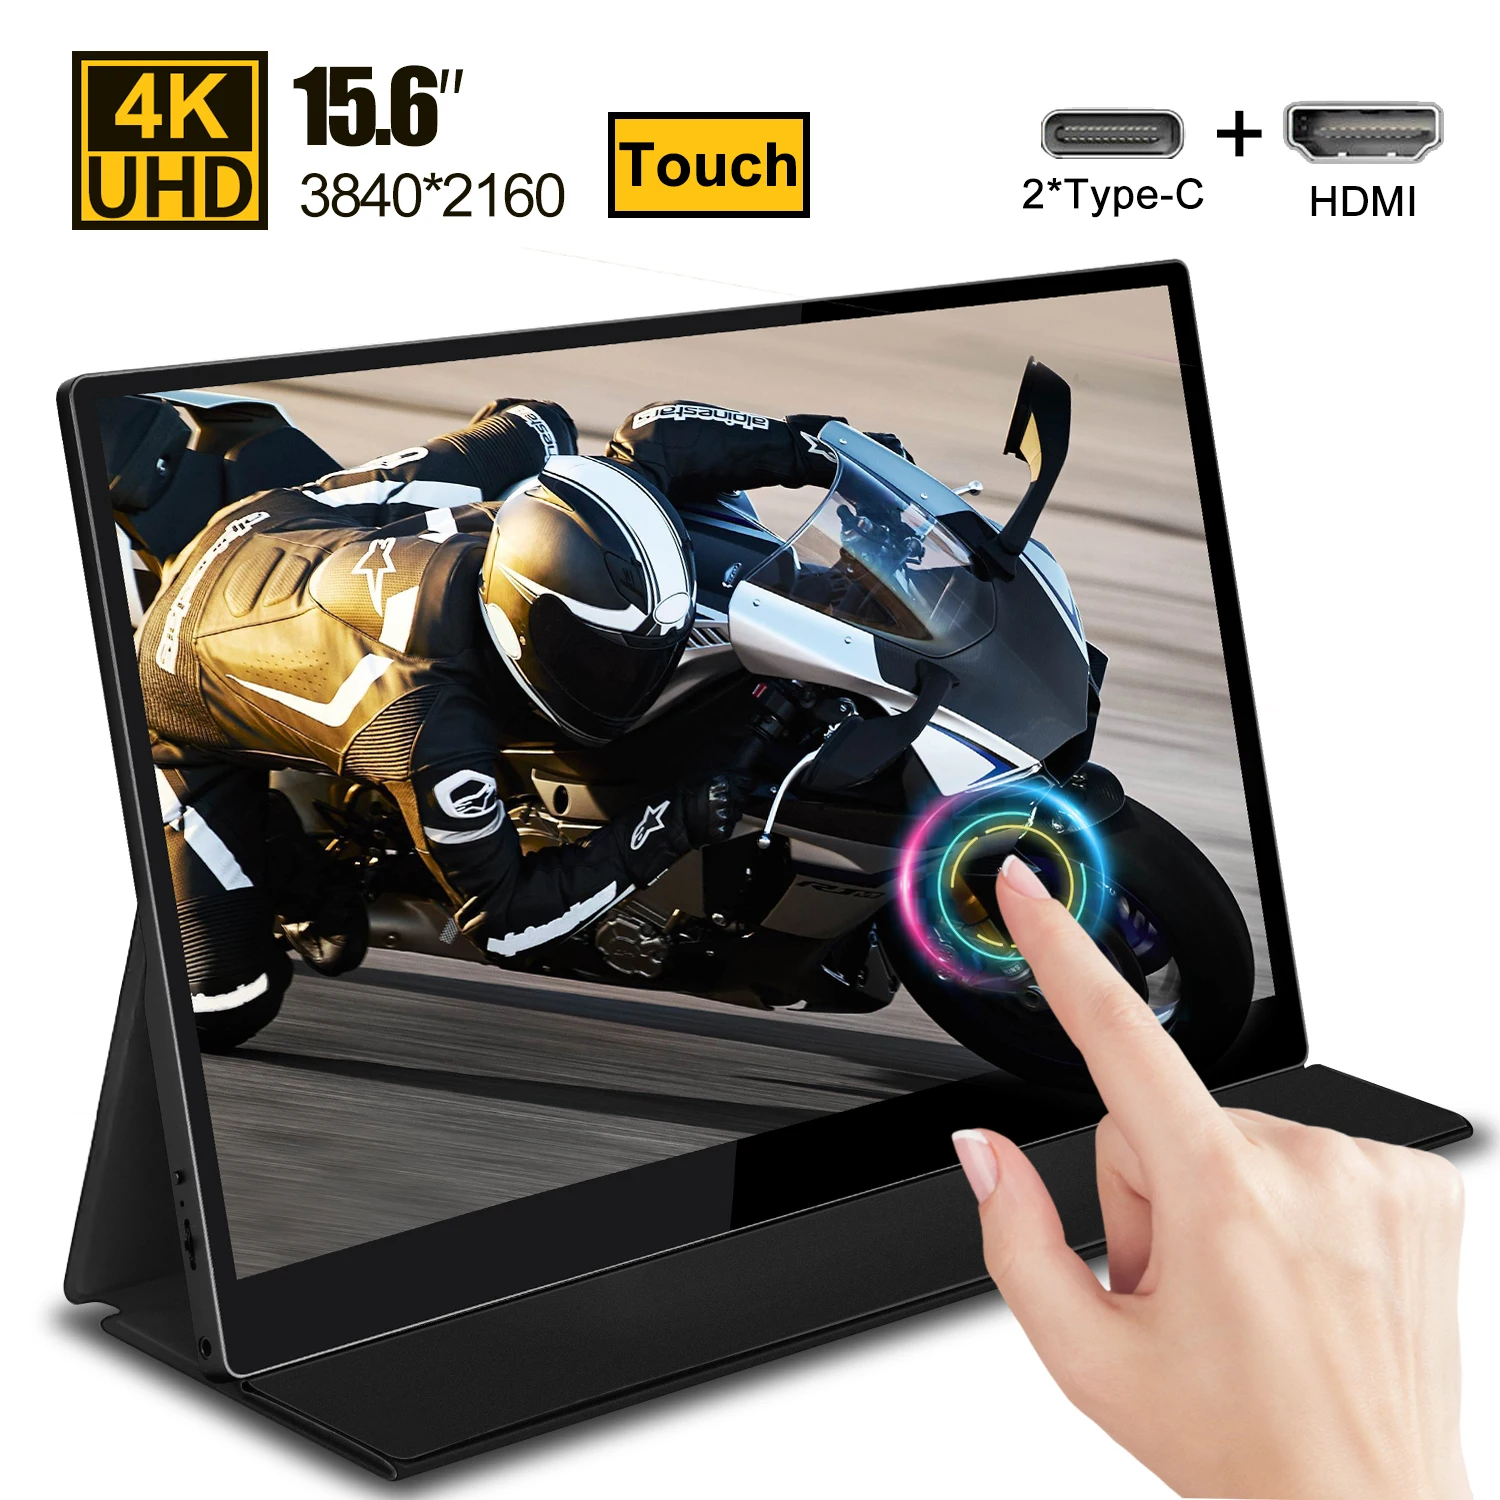 구매 4K 터치 스크린 모니터 휴대용 LCD 디스플레이 X 박스 시리즈 X PC PS4 컴퓨터 15.6 인치 IPS 스크린 게이머 모니터 HDMI 유형 C